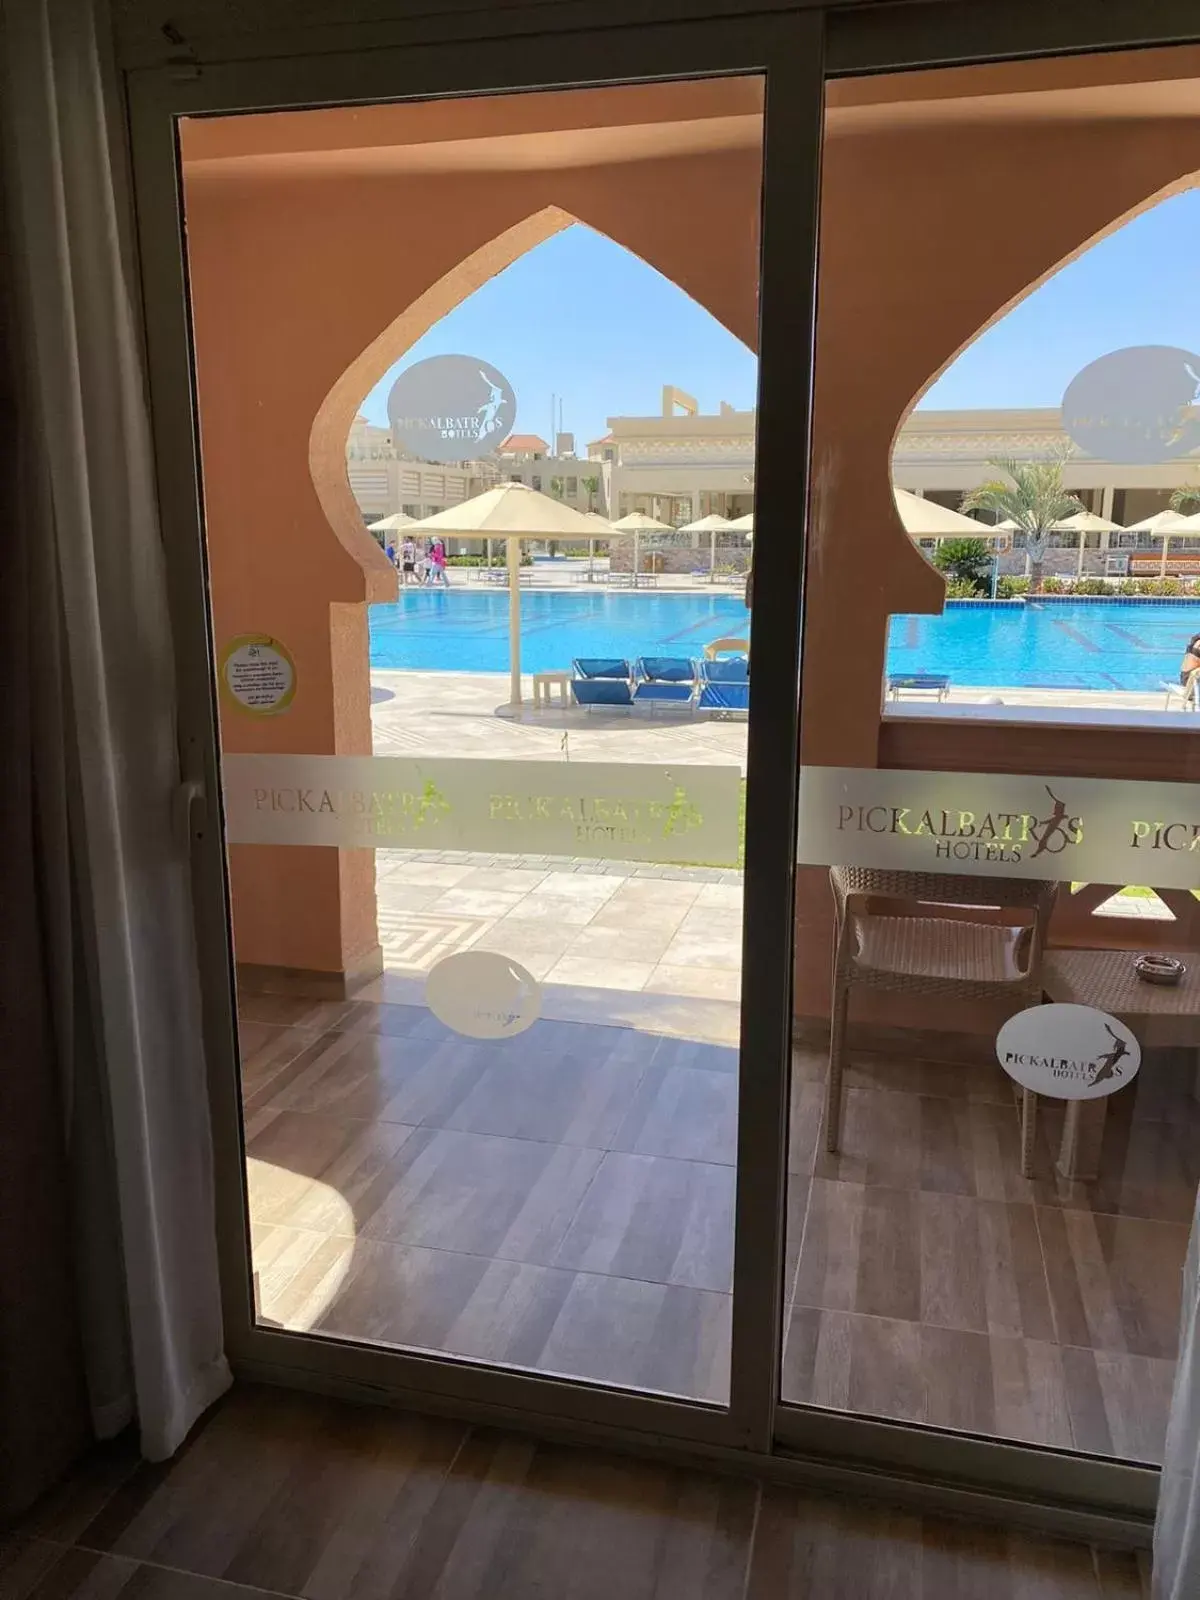 Pool View in Pickalbatros Aqua Vista Resort - Hurghada